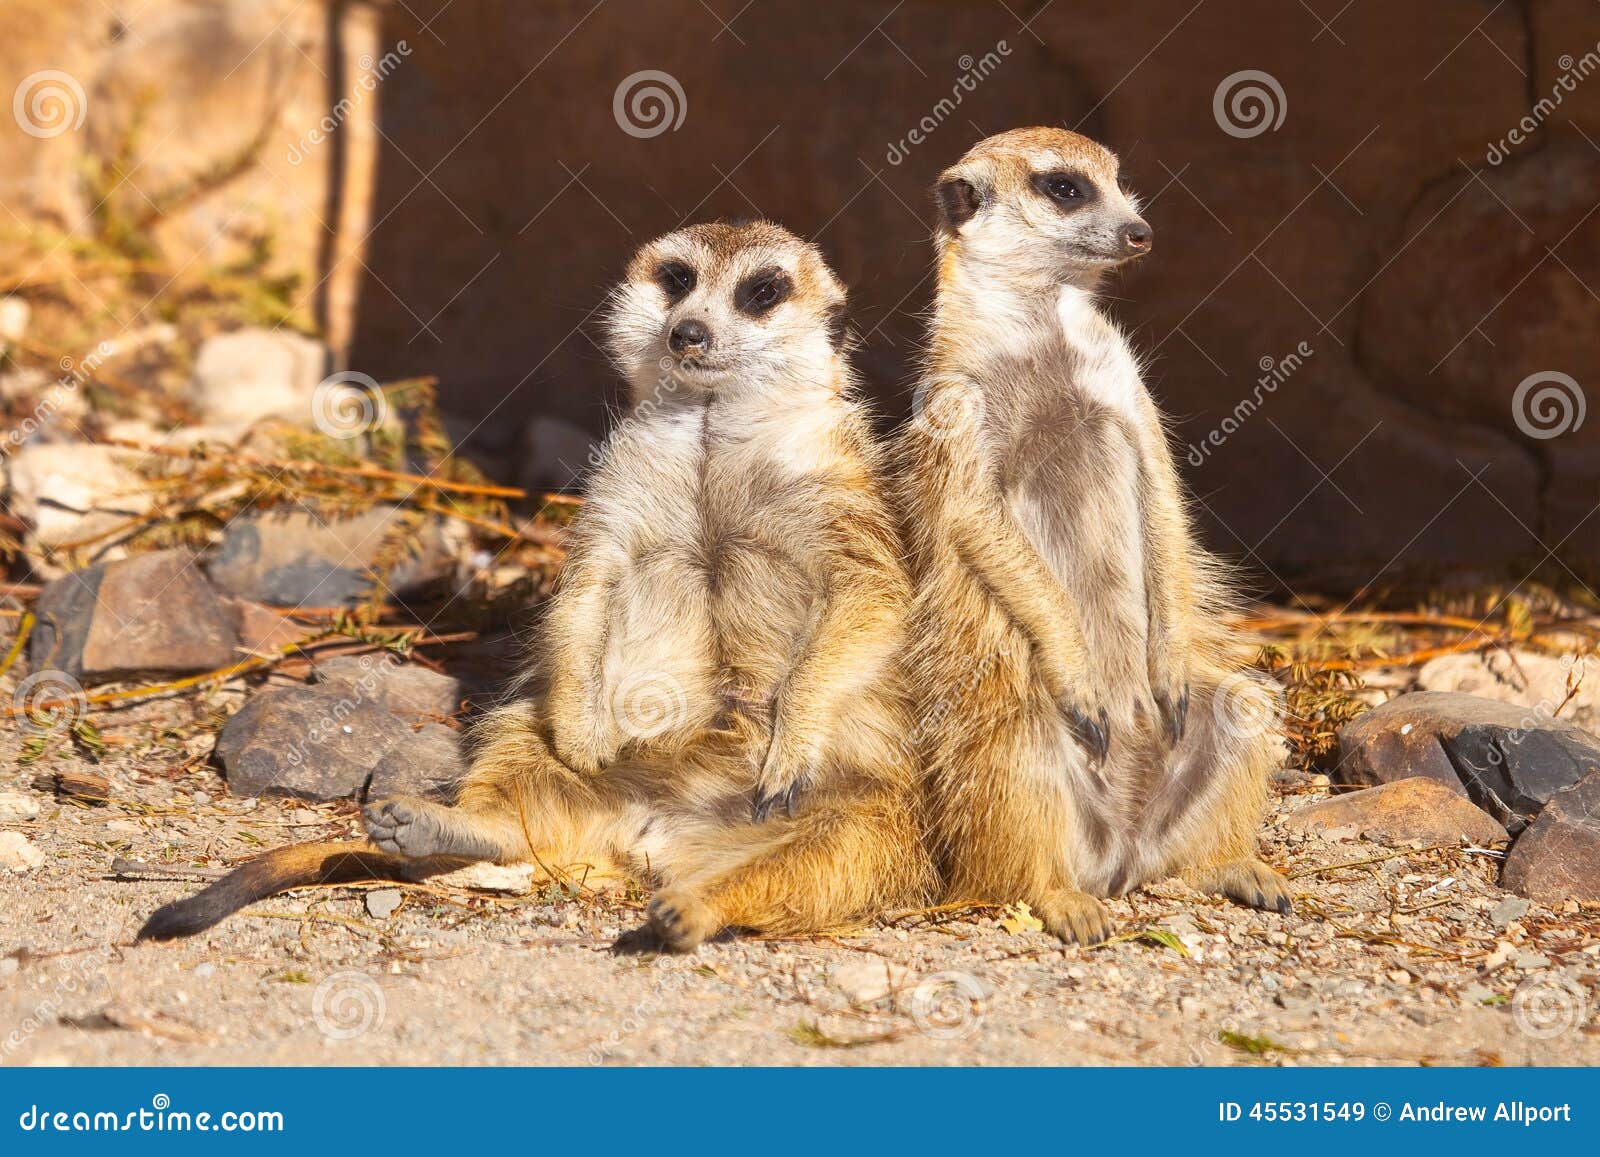 Two Meerkats relaxing stock image. Image of wilderness - 45531549